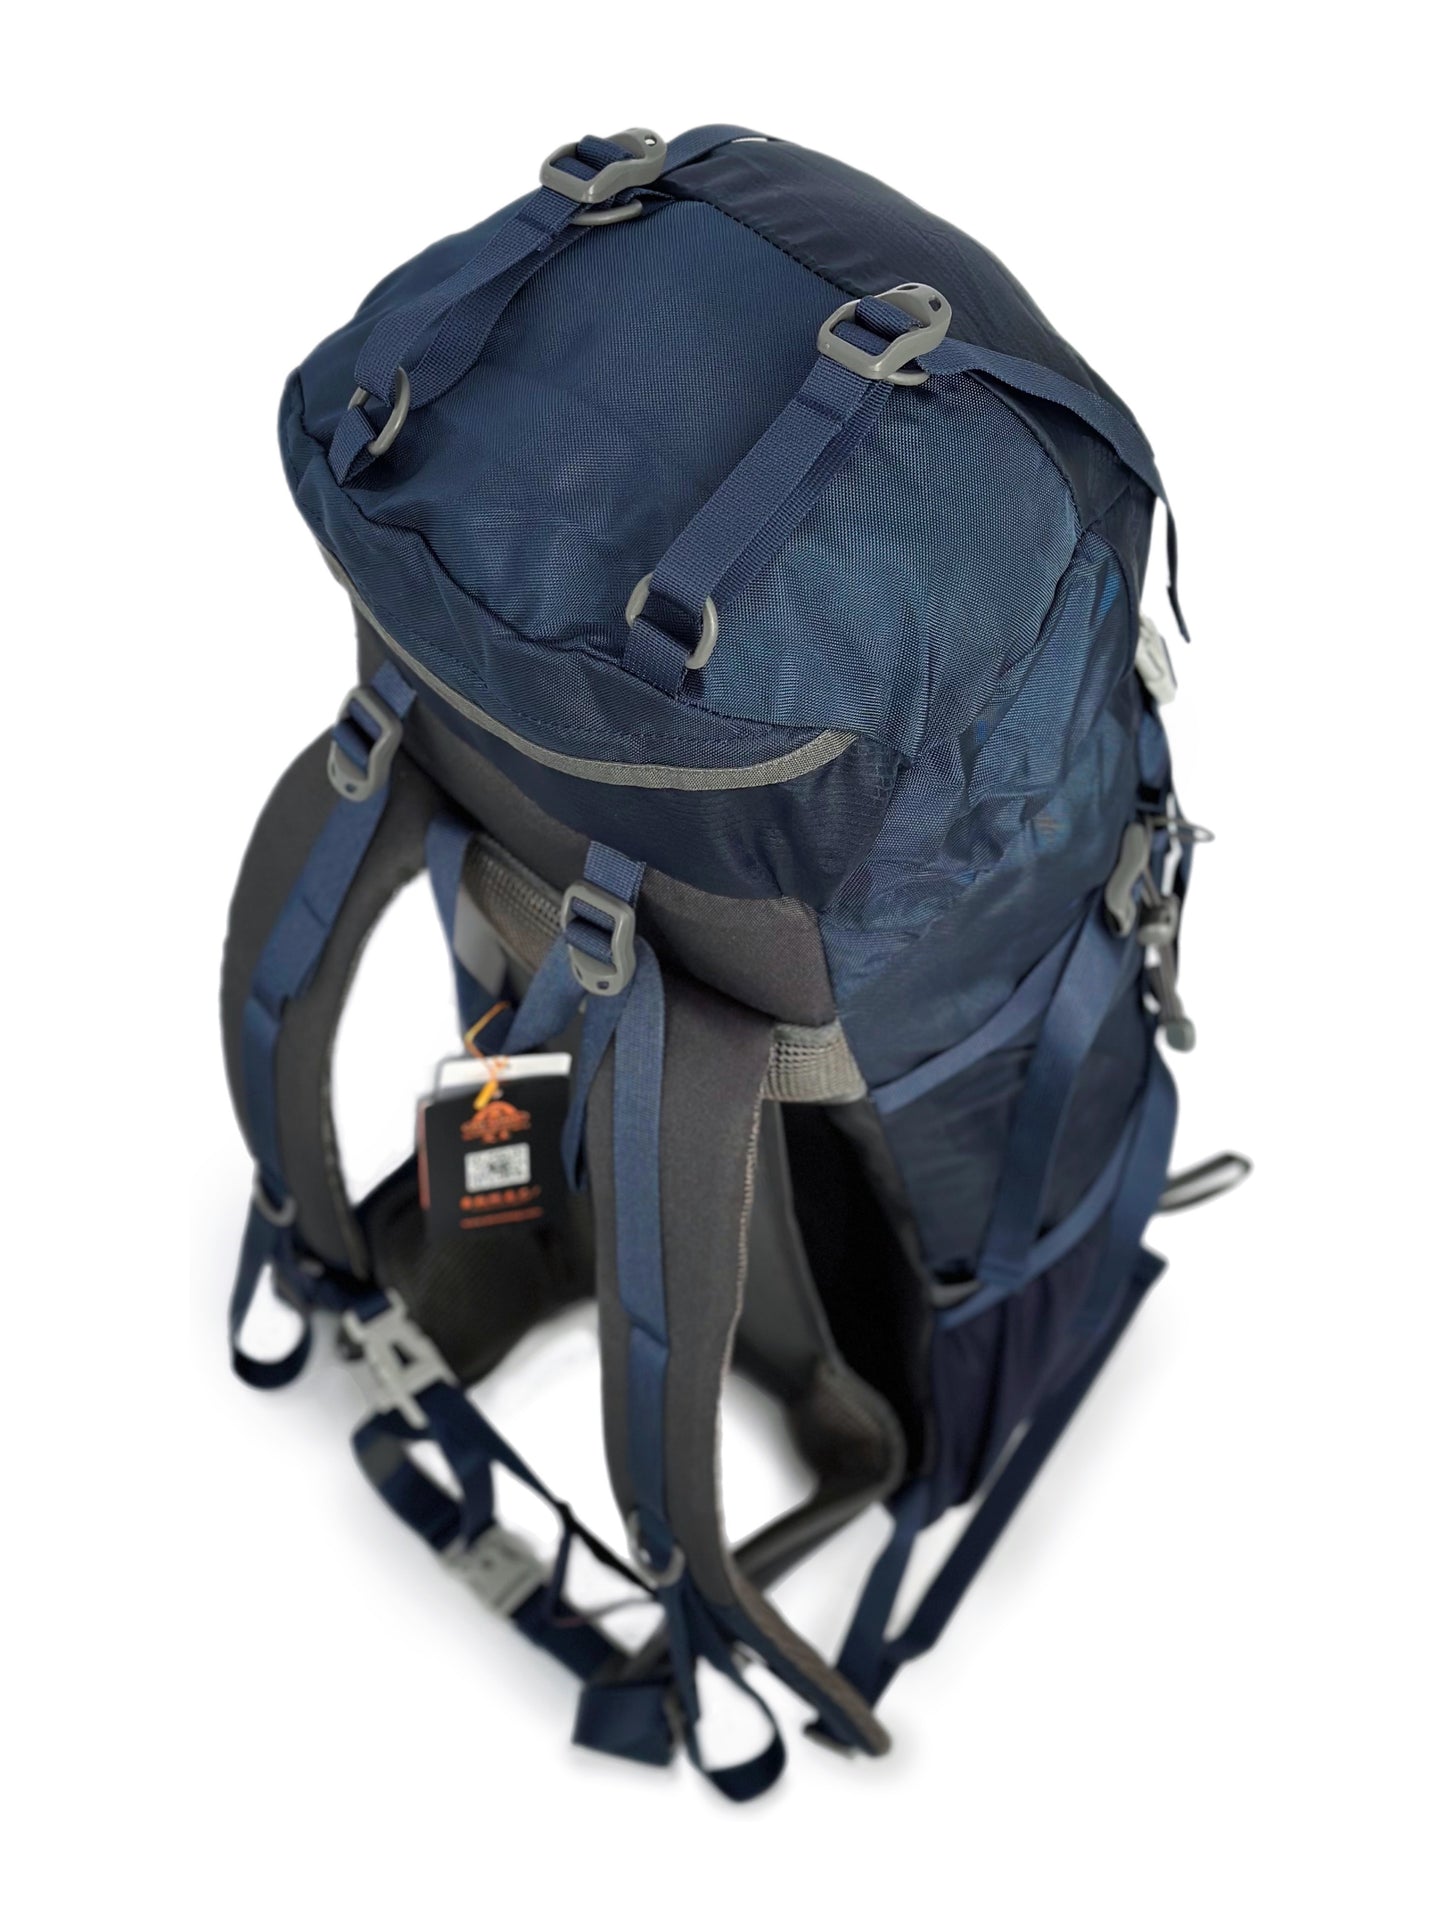 Leichter Rucksack aus Nylon für Bergsteigen und Trekking - 50L, Ergonomischer Rahmen